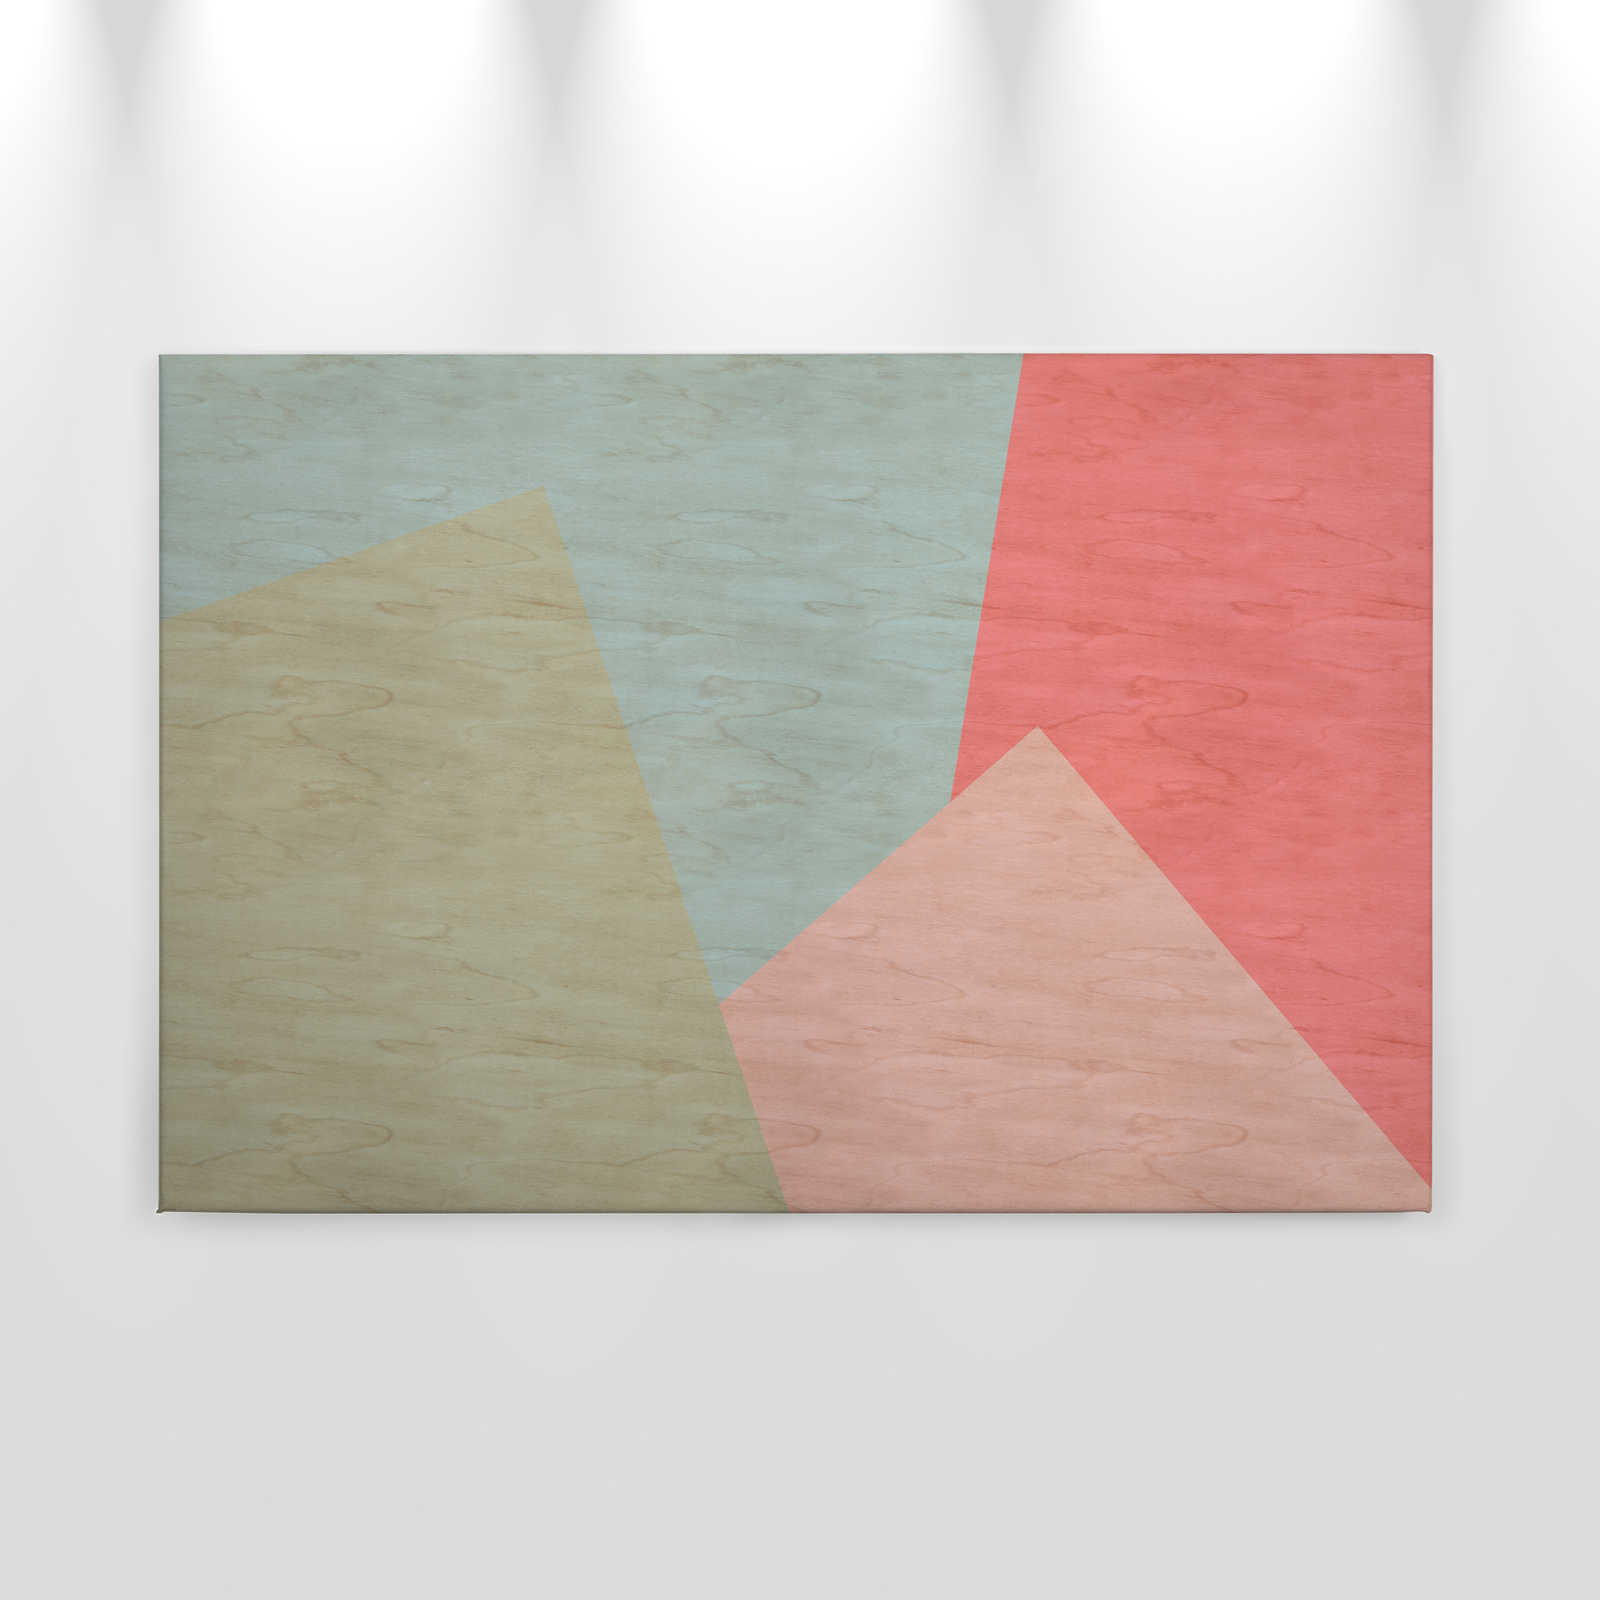             Inaly 2 - Pintura abstracta sobre lienzo de colores en estructura de madera contrachapada - 0,90 m x 0,60 m
        